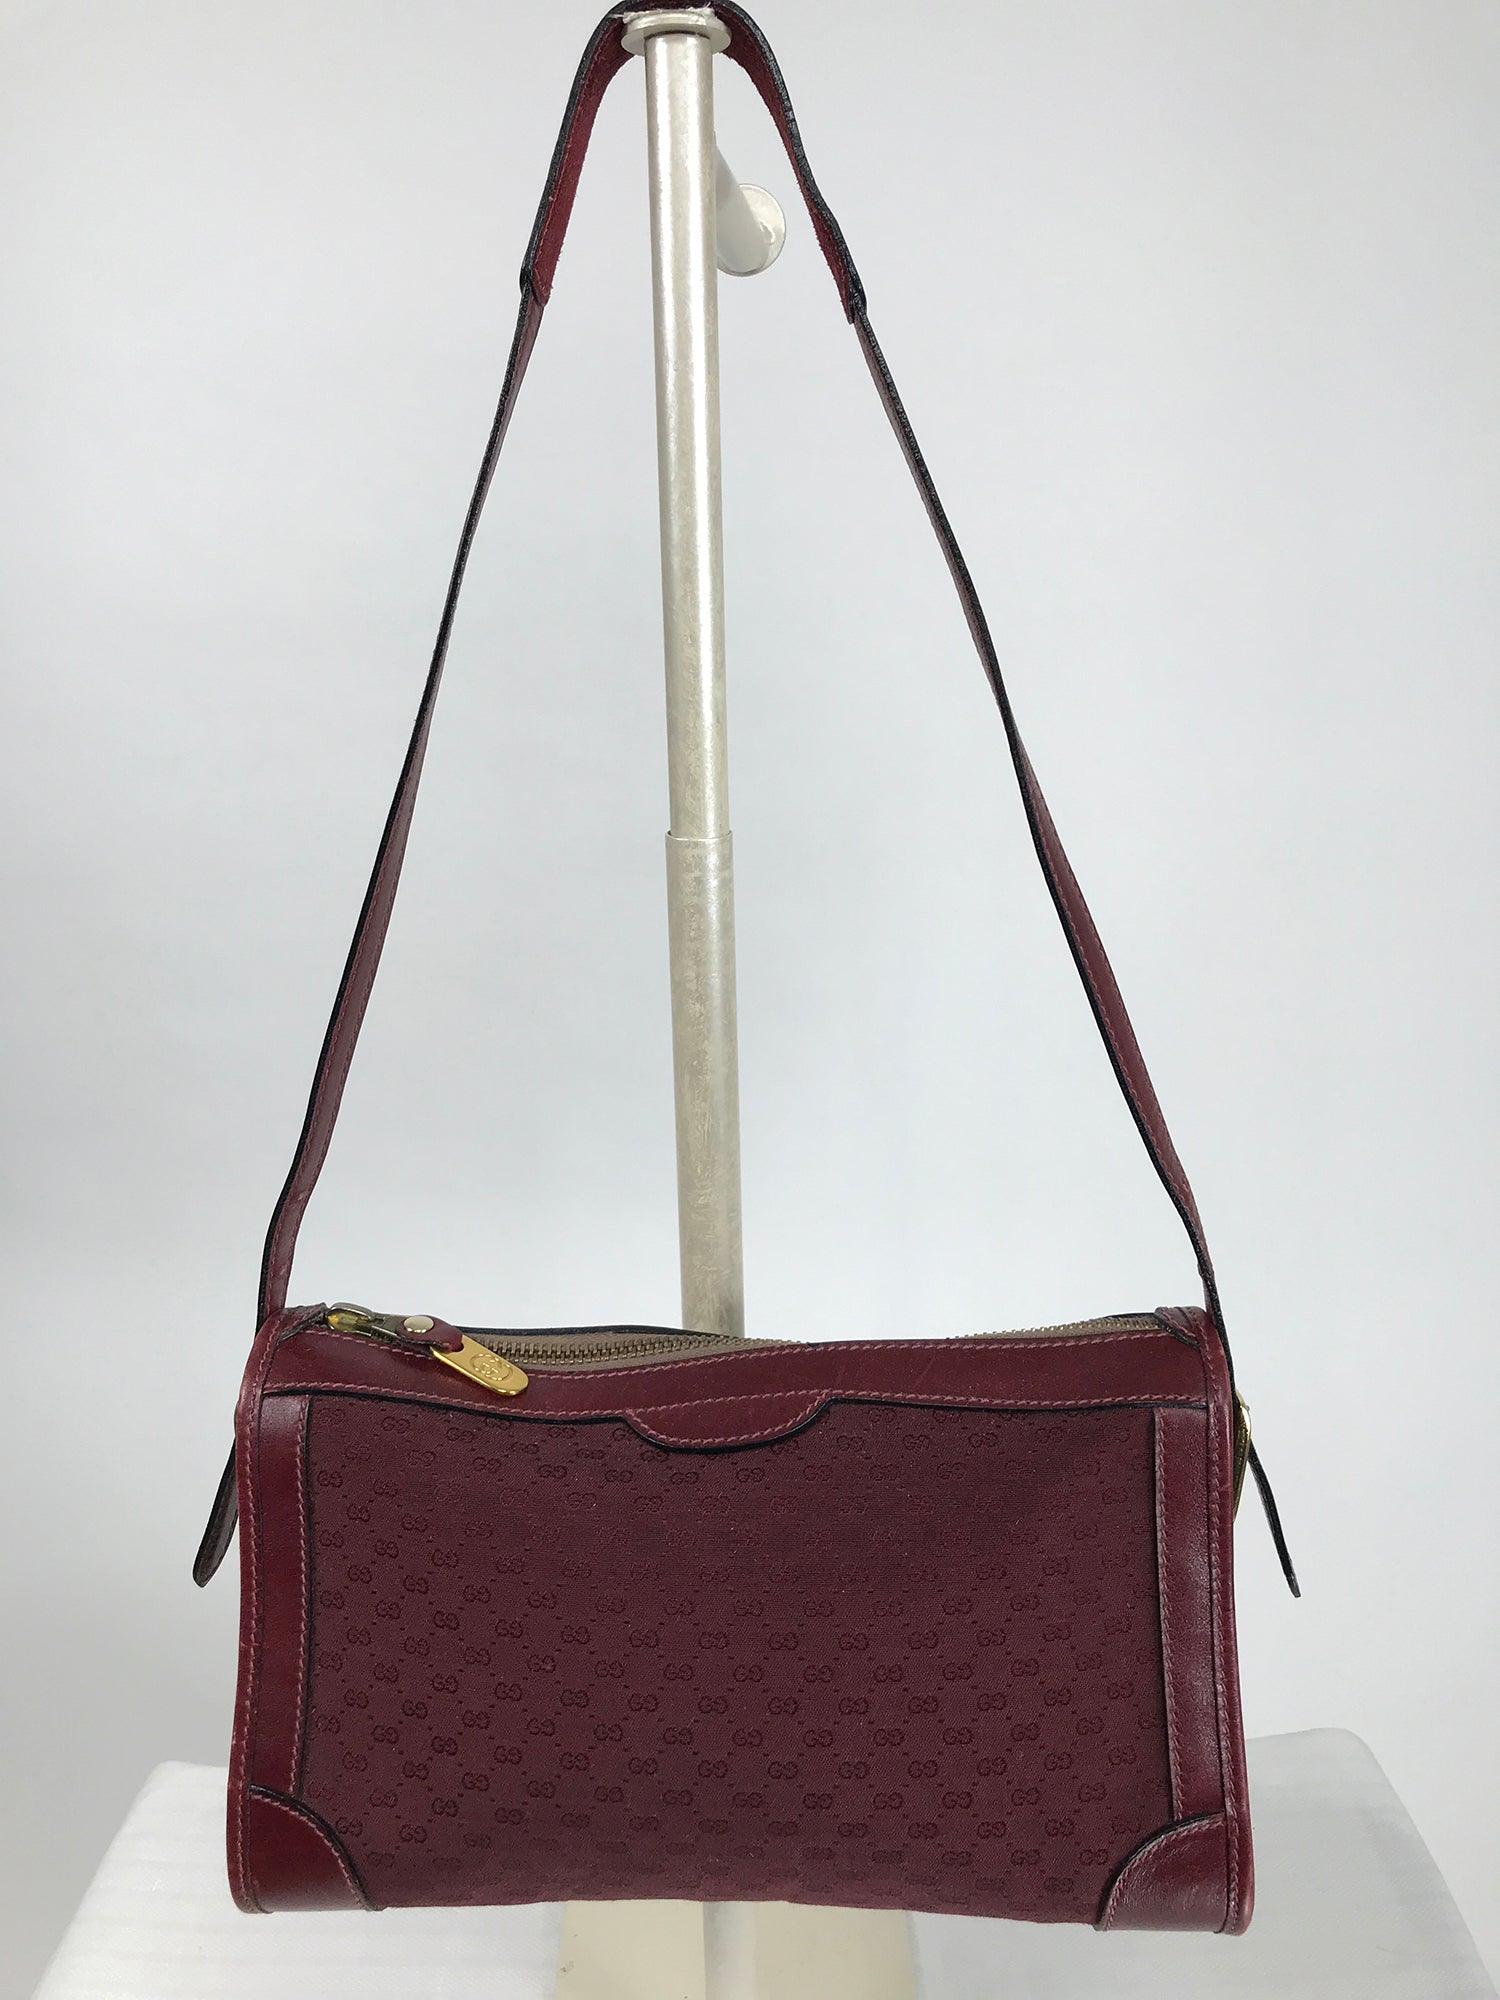 1950s Gucci Handbag - 7 For Sale on 1stDibs